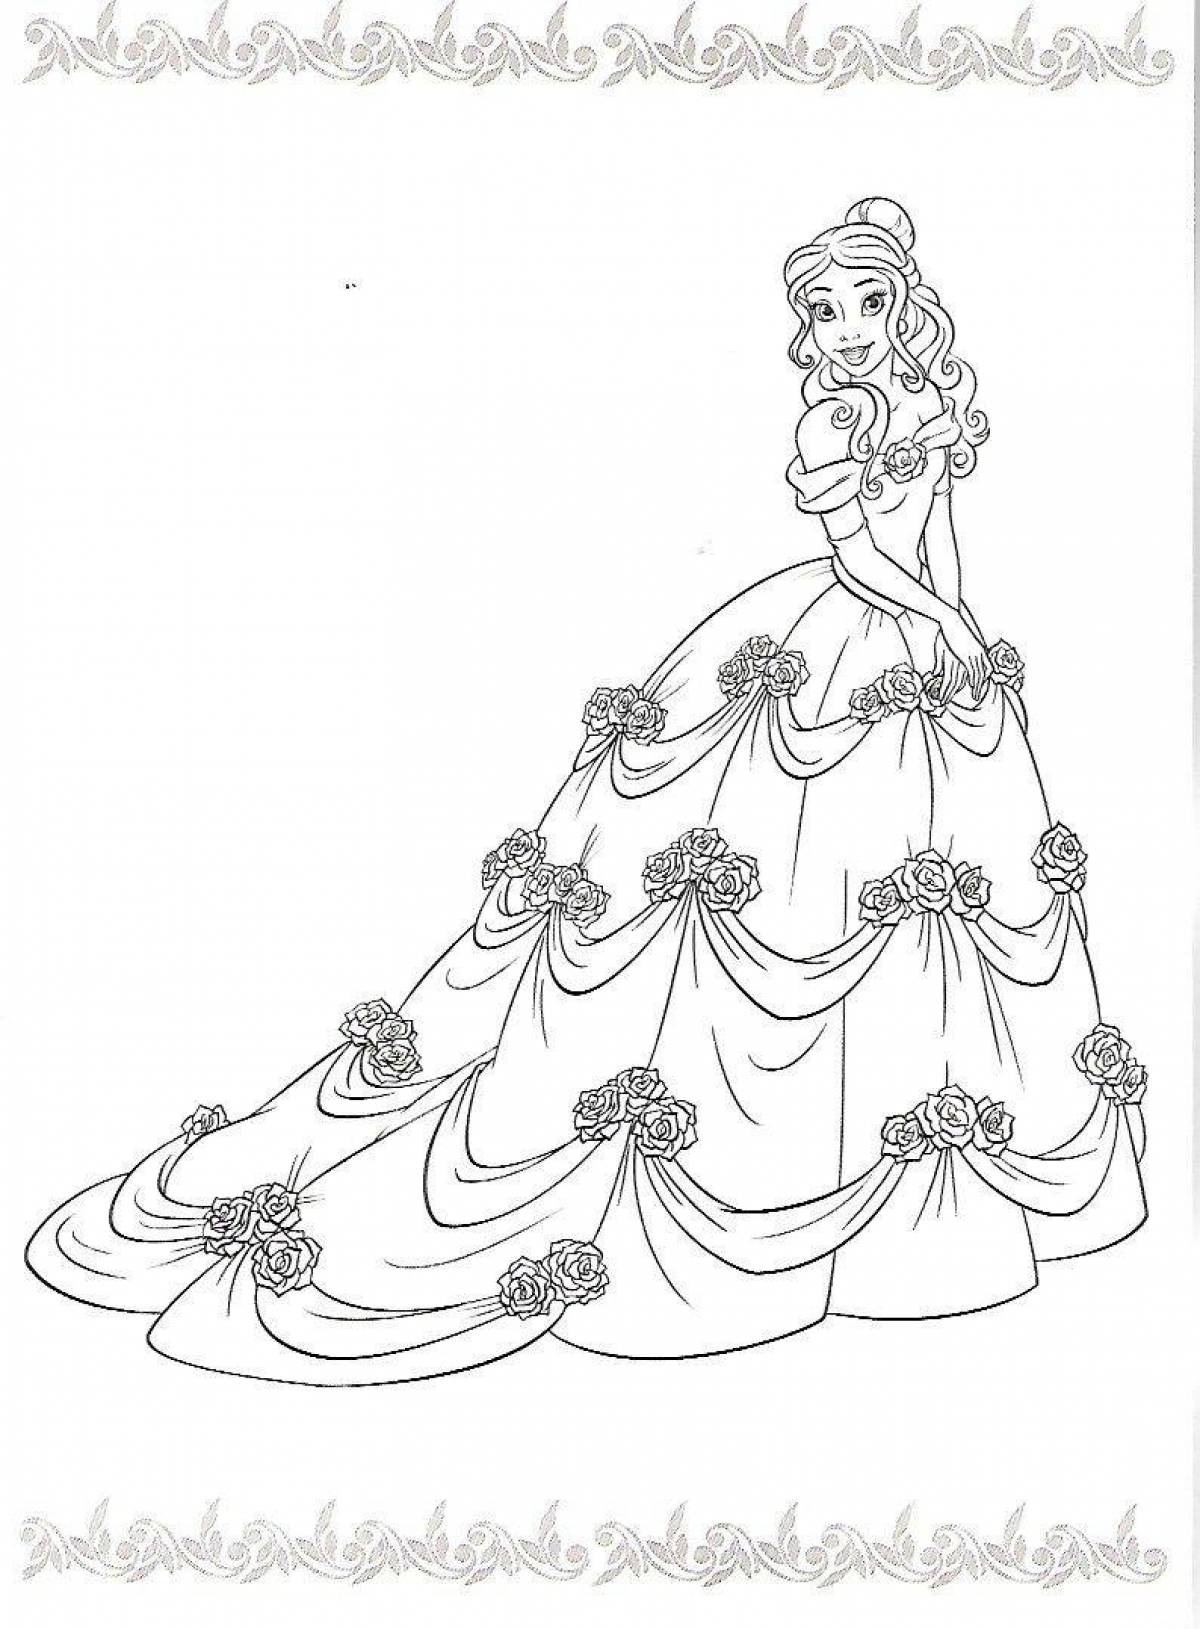 Live coloring of disney princesses in beautiful dresses